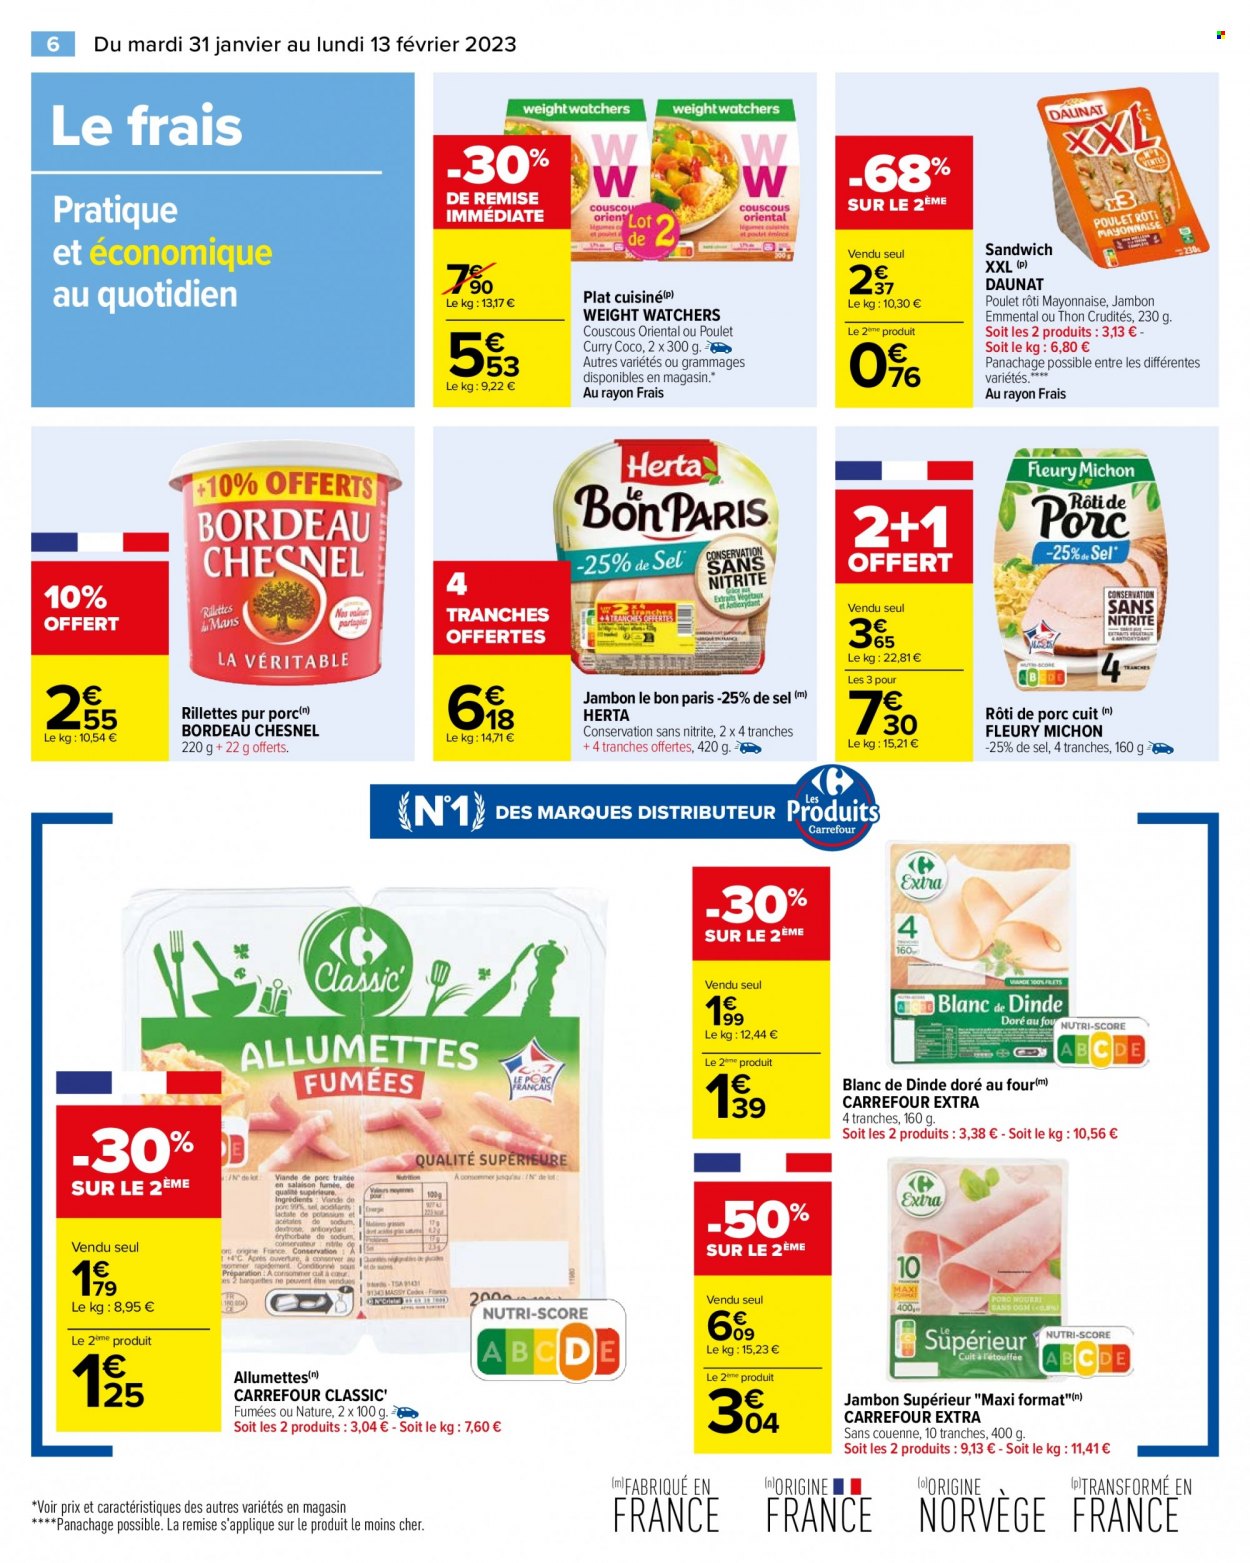 thumbnail - Catalogue Carrefour Hypermarchés - 31/01/2023 - 13/02/2023 - Produits soldés - rôti de porc, thon, rillettes, sandwich, Fleury Michon, plat cuisiné, allumettes, Herta, jambon, fromage. Page 8.